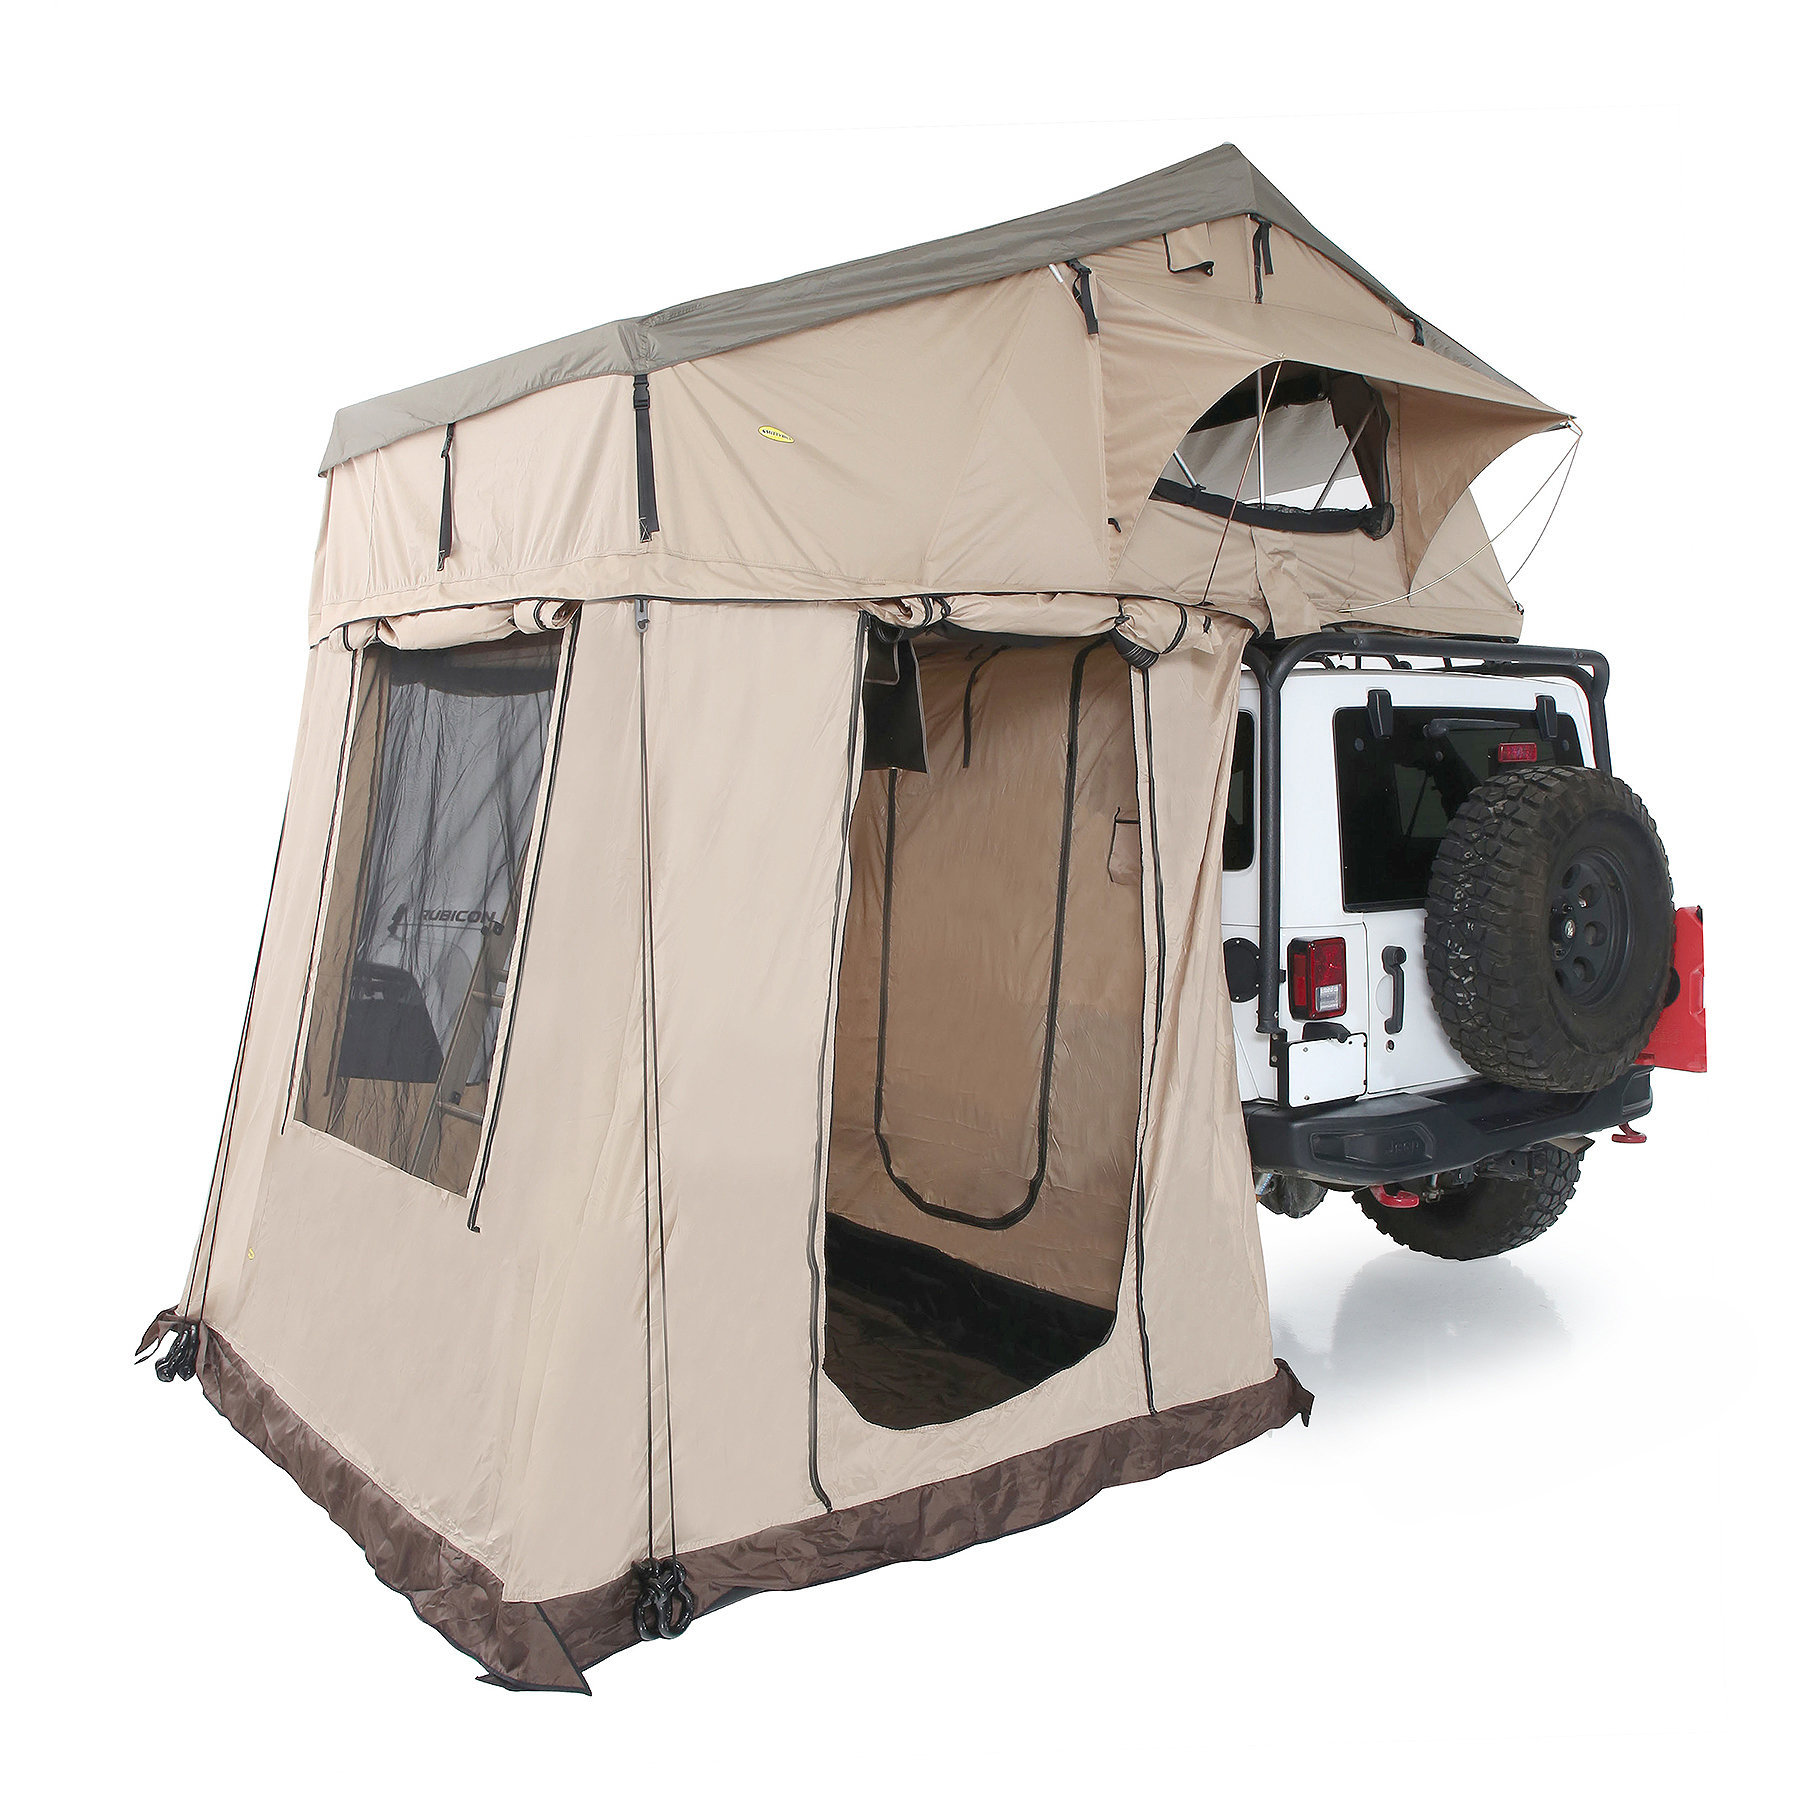 Smittybilt 2888 Overlander Tent Annex XL for Overlander XL Tent